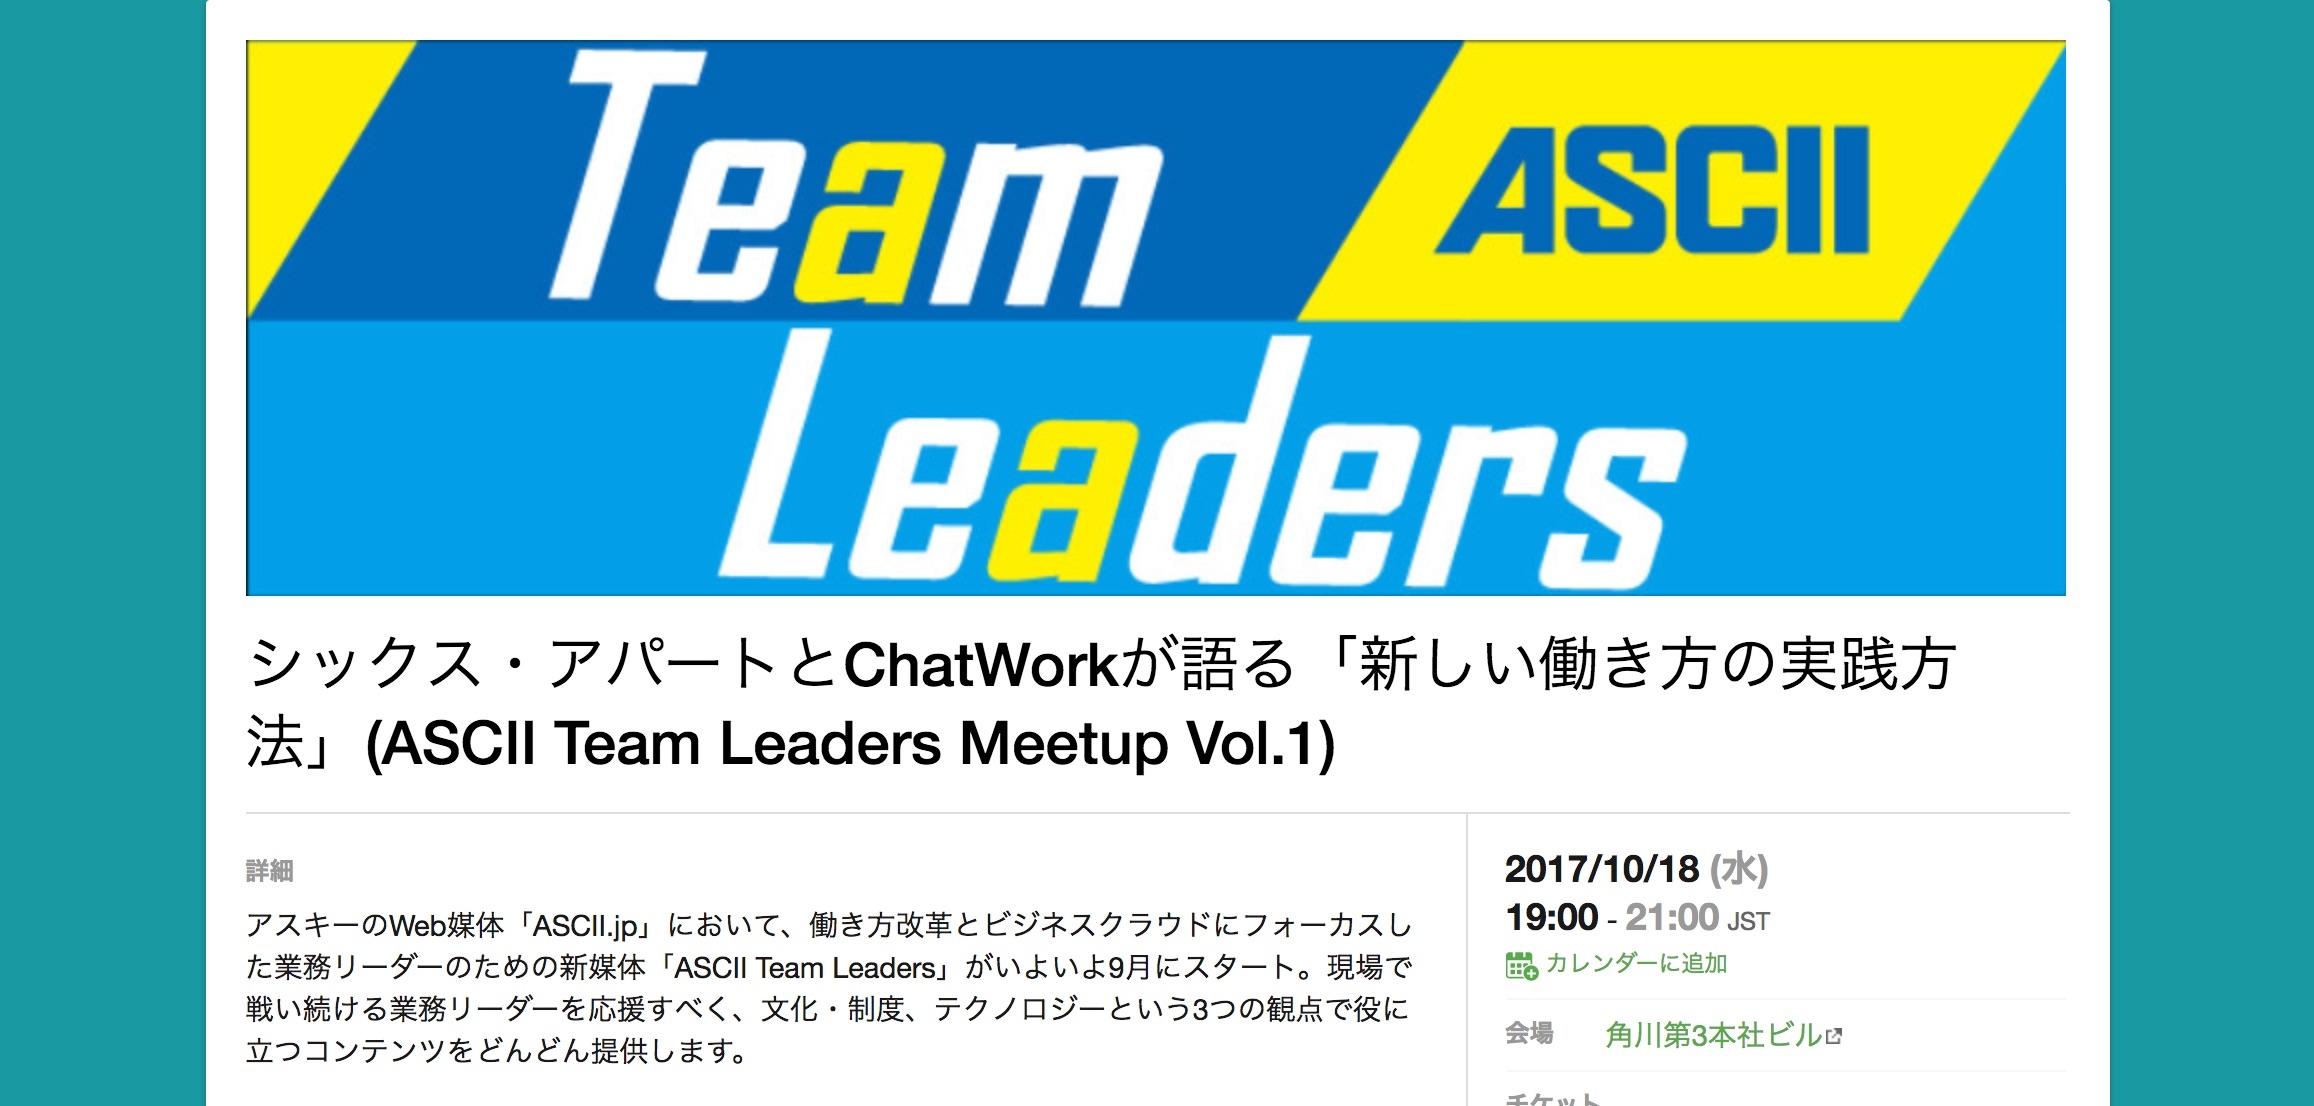 今週水曜、ASCII Team Leadersのイベントで働き方についてのパネルディスカッションに参加しますの巻 [ほぼ週刊SA]